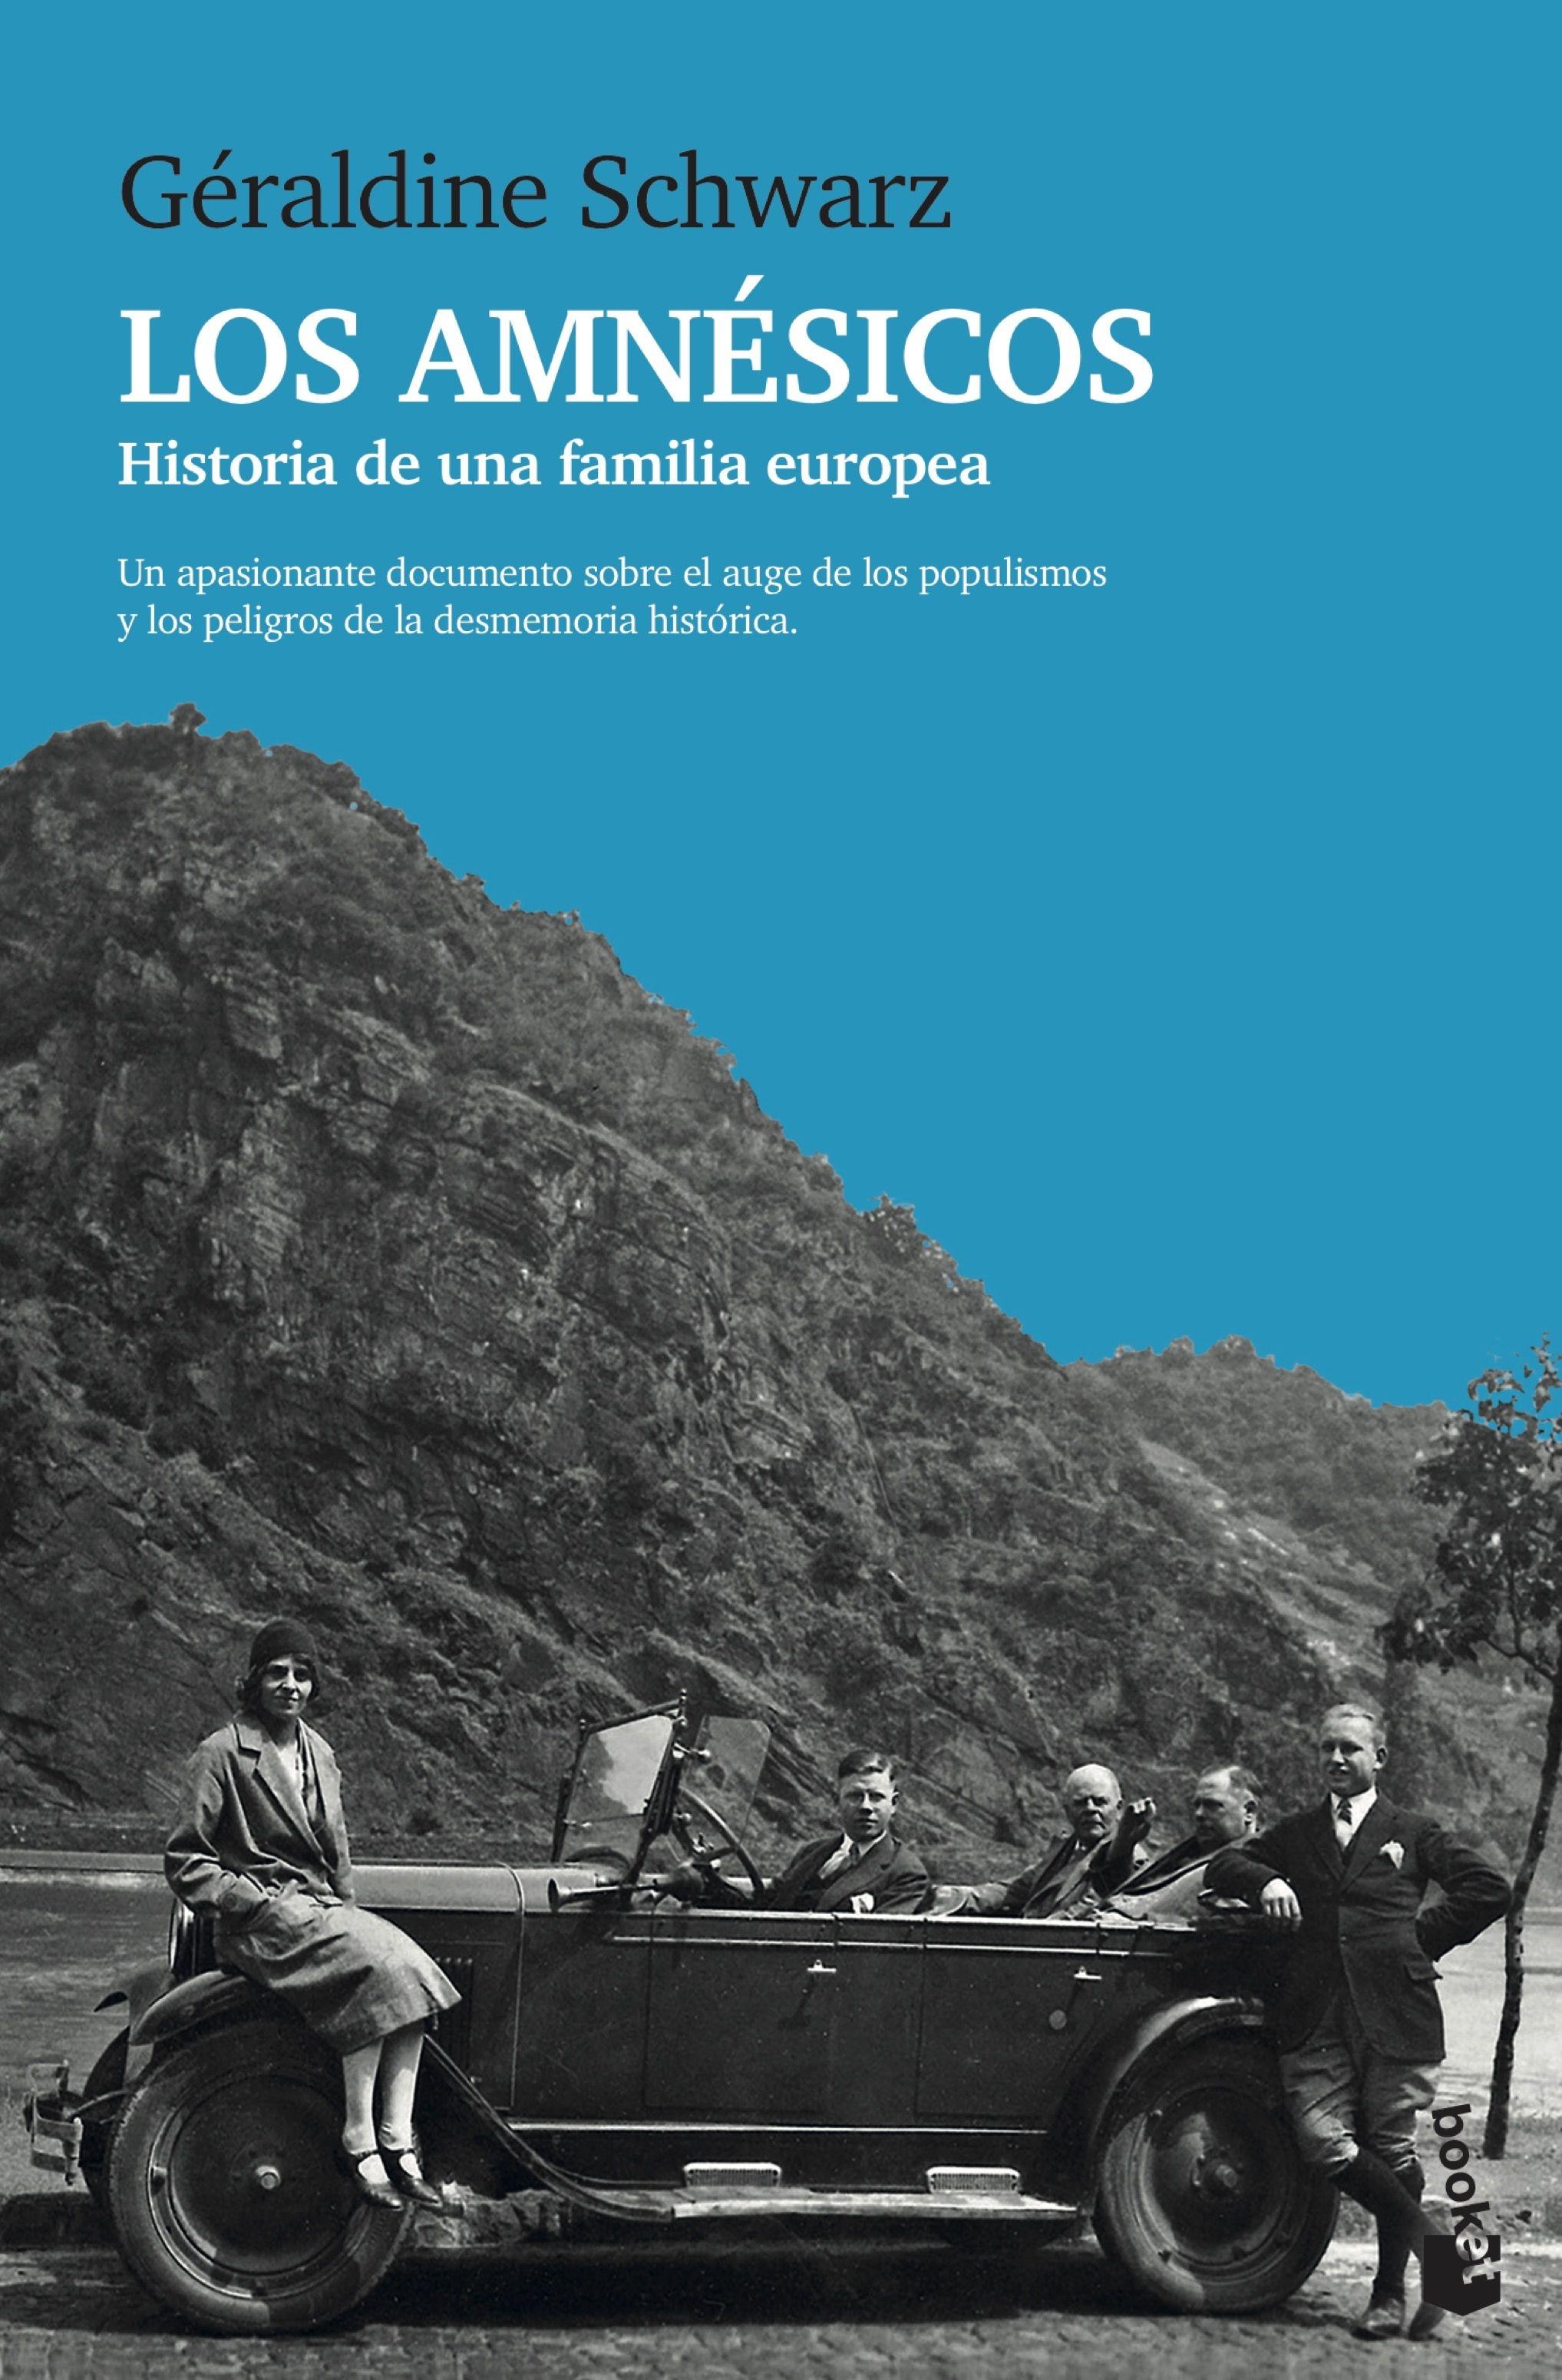 Los amnésicos "Historia de una familia europea"